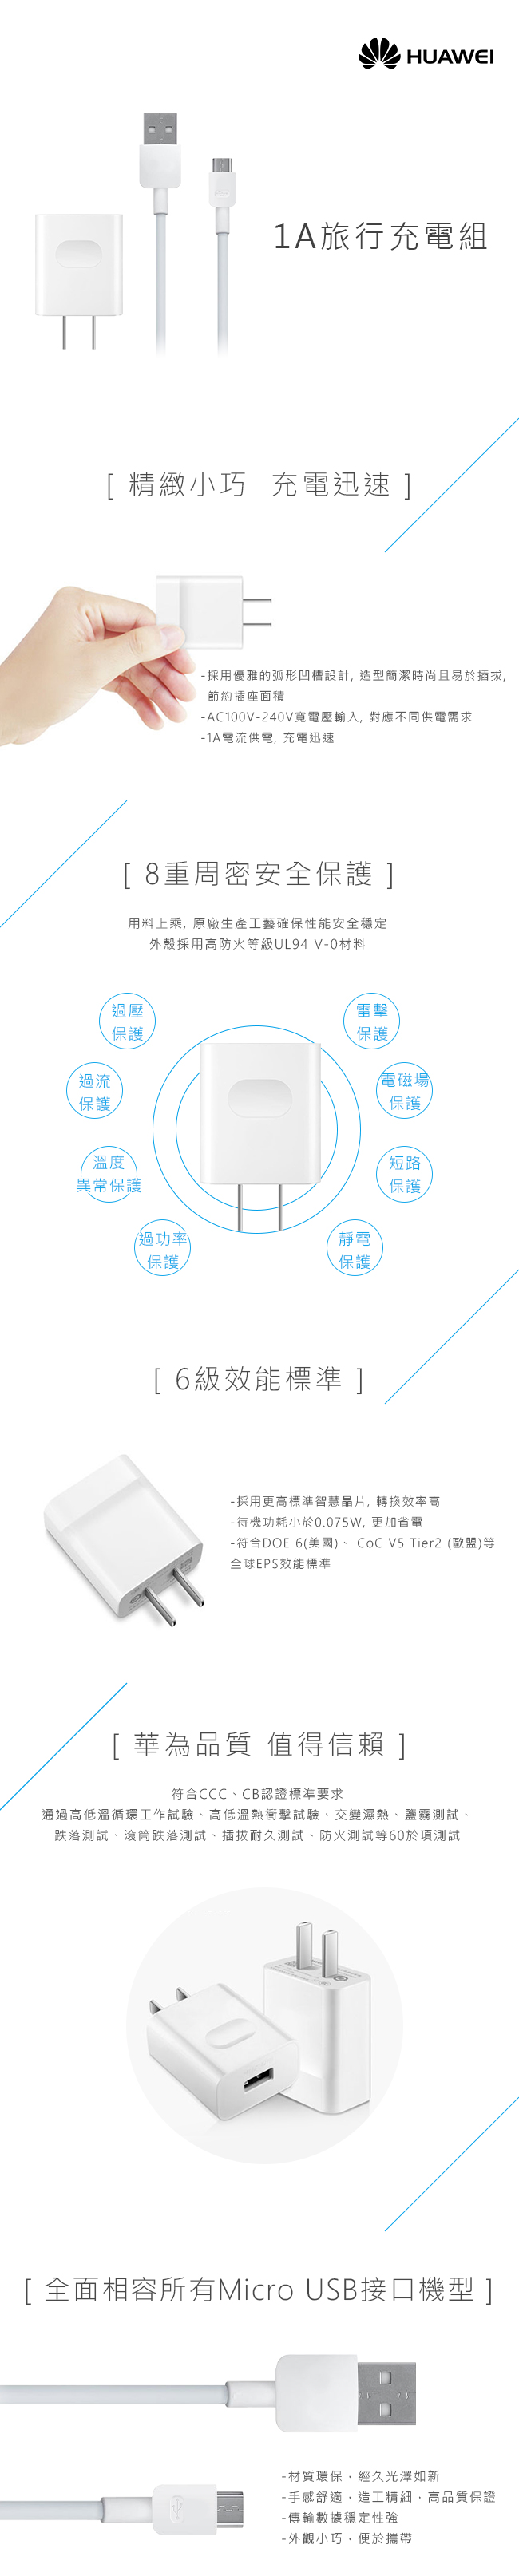 HUAWEI華為 原廠5V/1A旅行充電器 + 傳輸充電線組 (台灣盒裝拆售款)